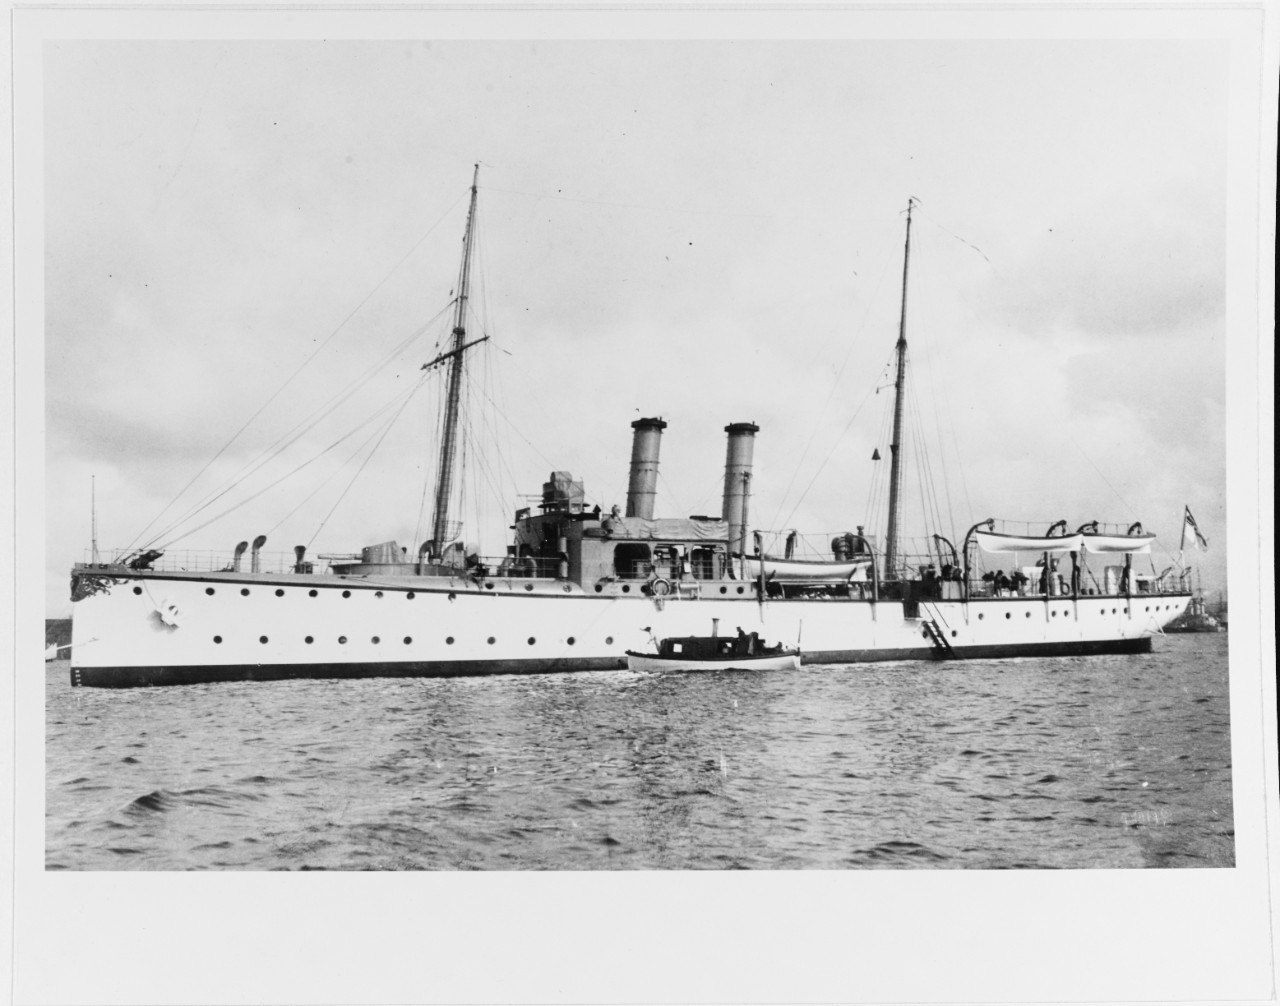 PANTHER (German gunboat, 1901-1931)